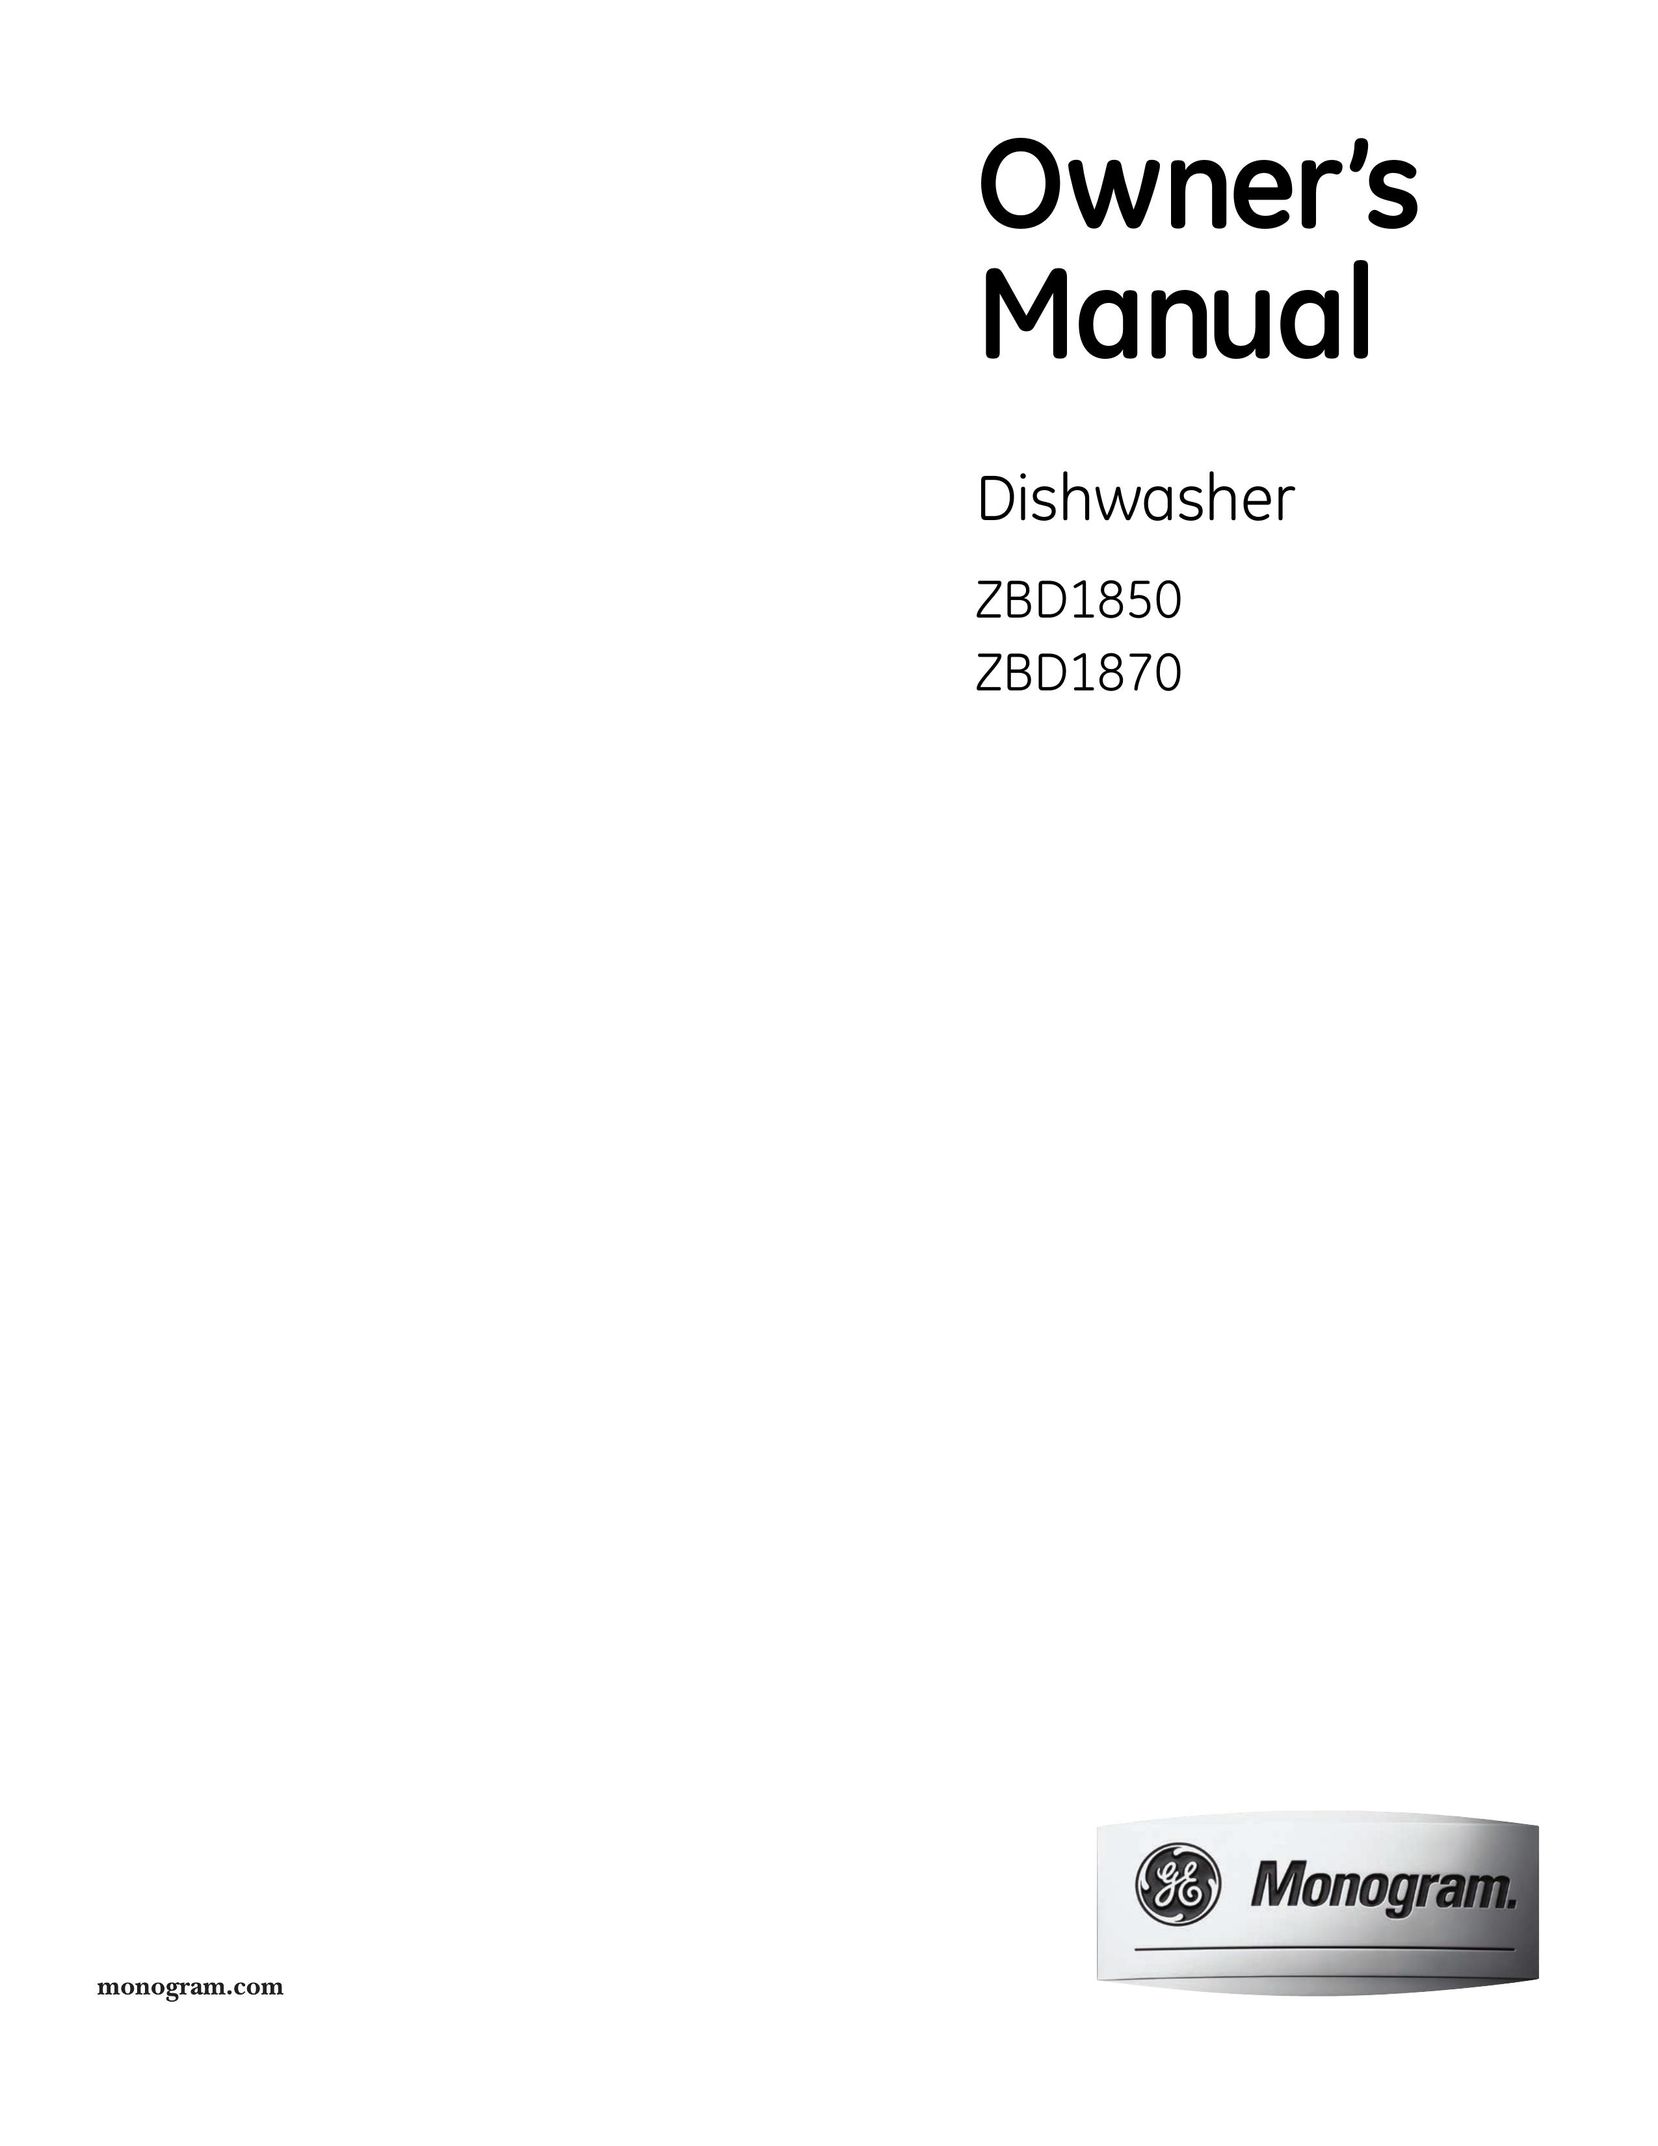 GE Monogram ZBD1870 Dishwasher User Manual